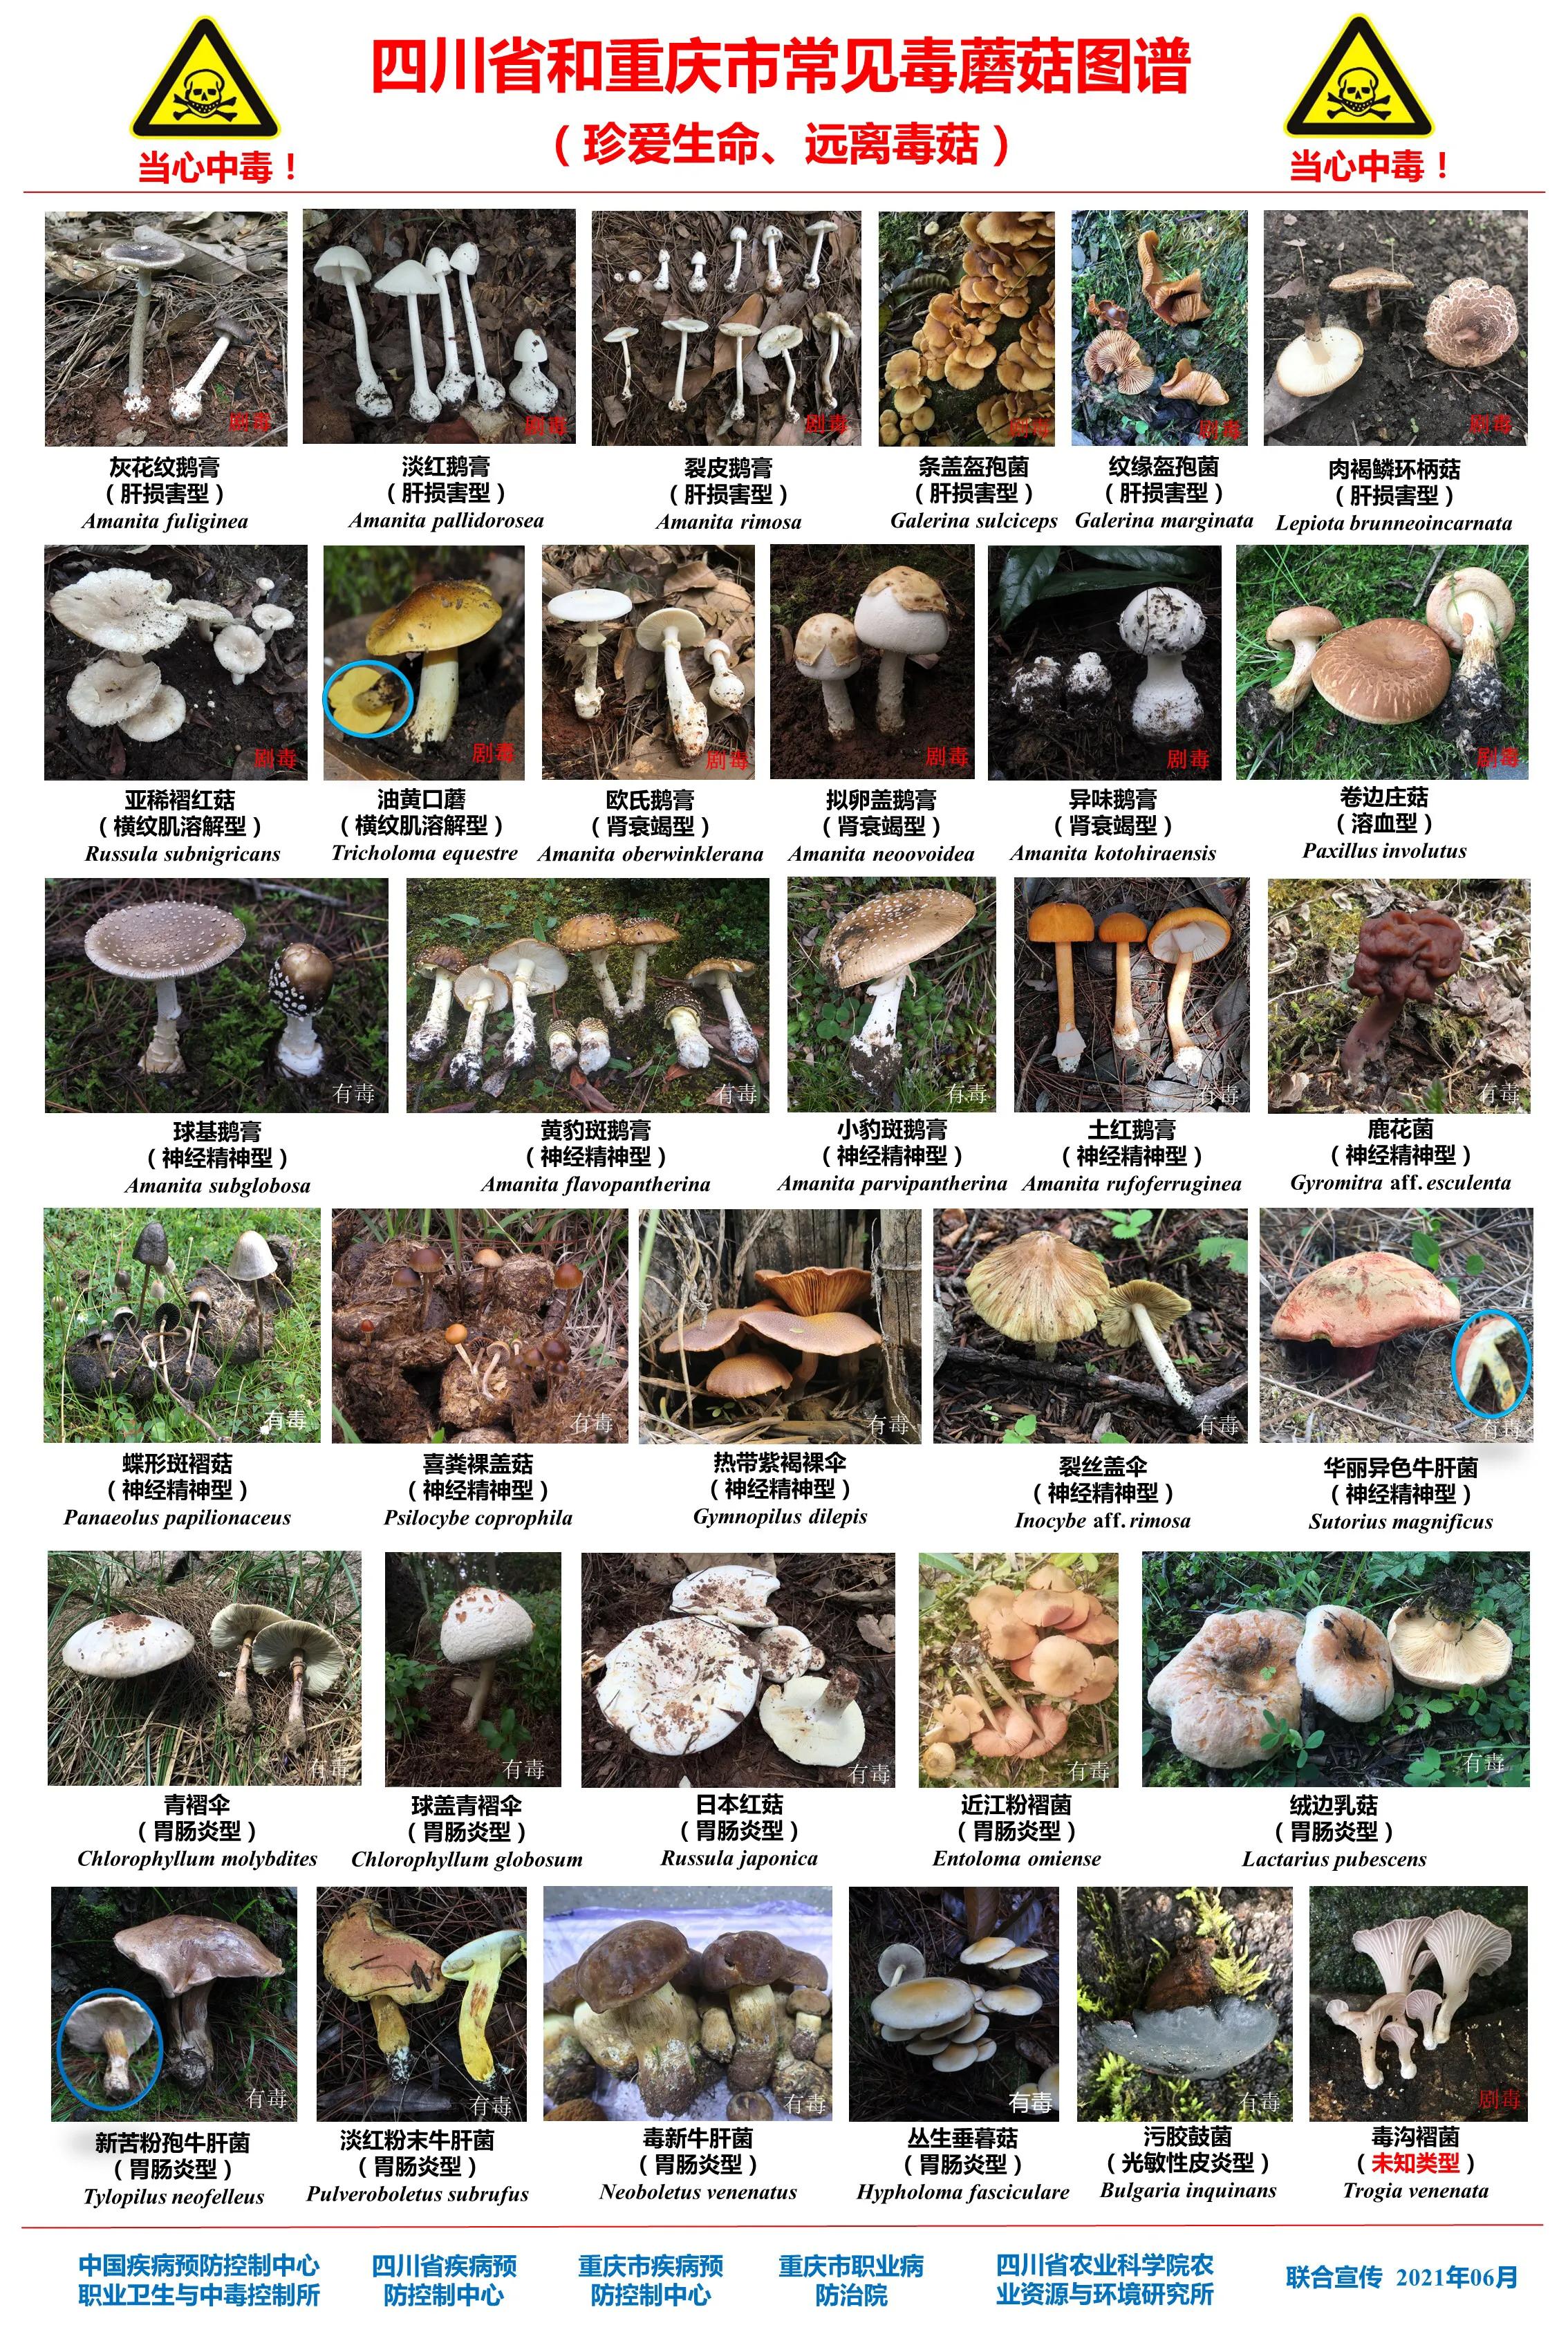 四川省微生物学会提示：不随意采食野生蘑菇